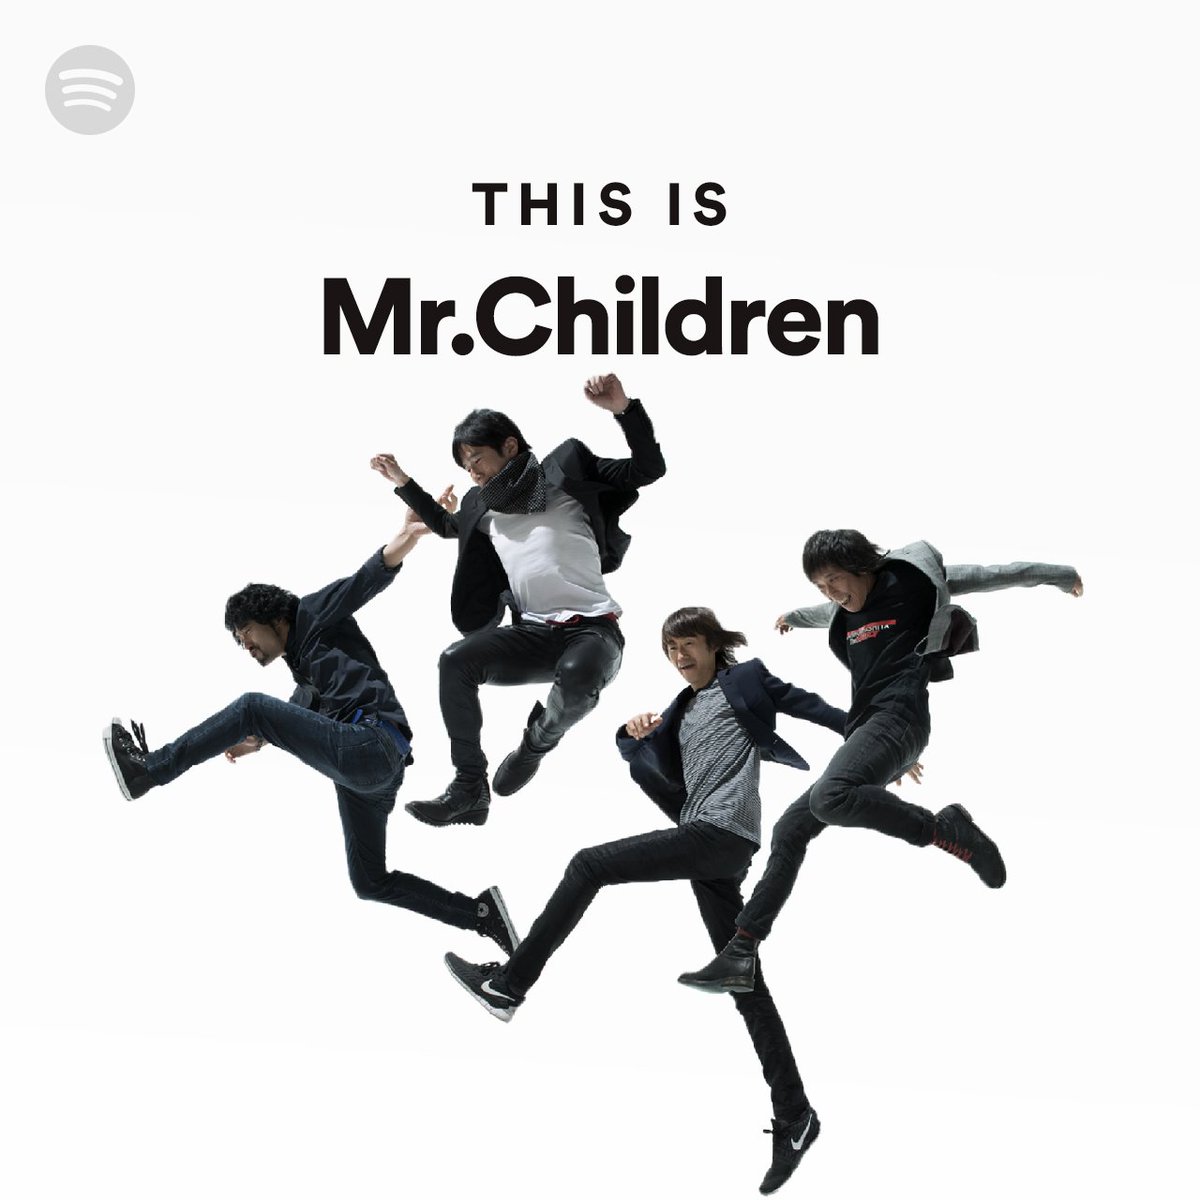 Spotify Japan در توییتر Mrchildren の楽曲にまつわるエピソードを募集 This Is Mr Children のプレイリストにオーディオコメントとして収録します エピソードを ぼくのミスチル わたしのミスチル をつけてツイート投稿してください 選ばれた1名様には